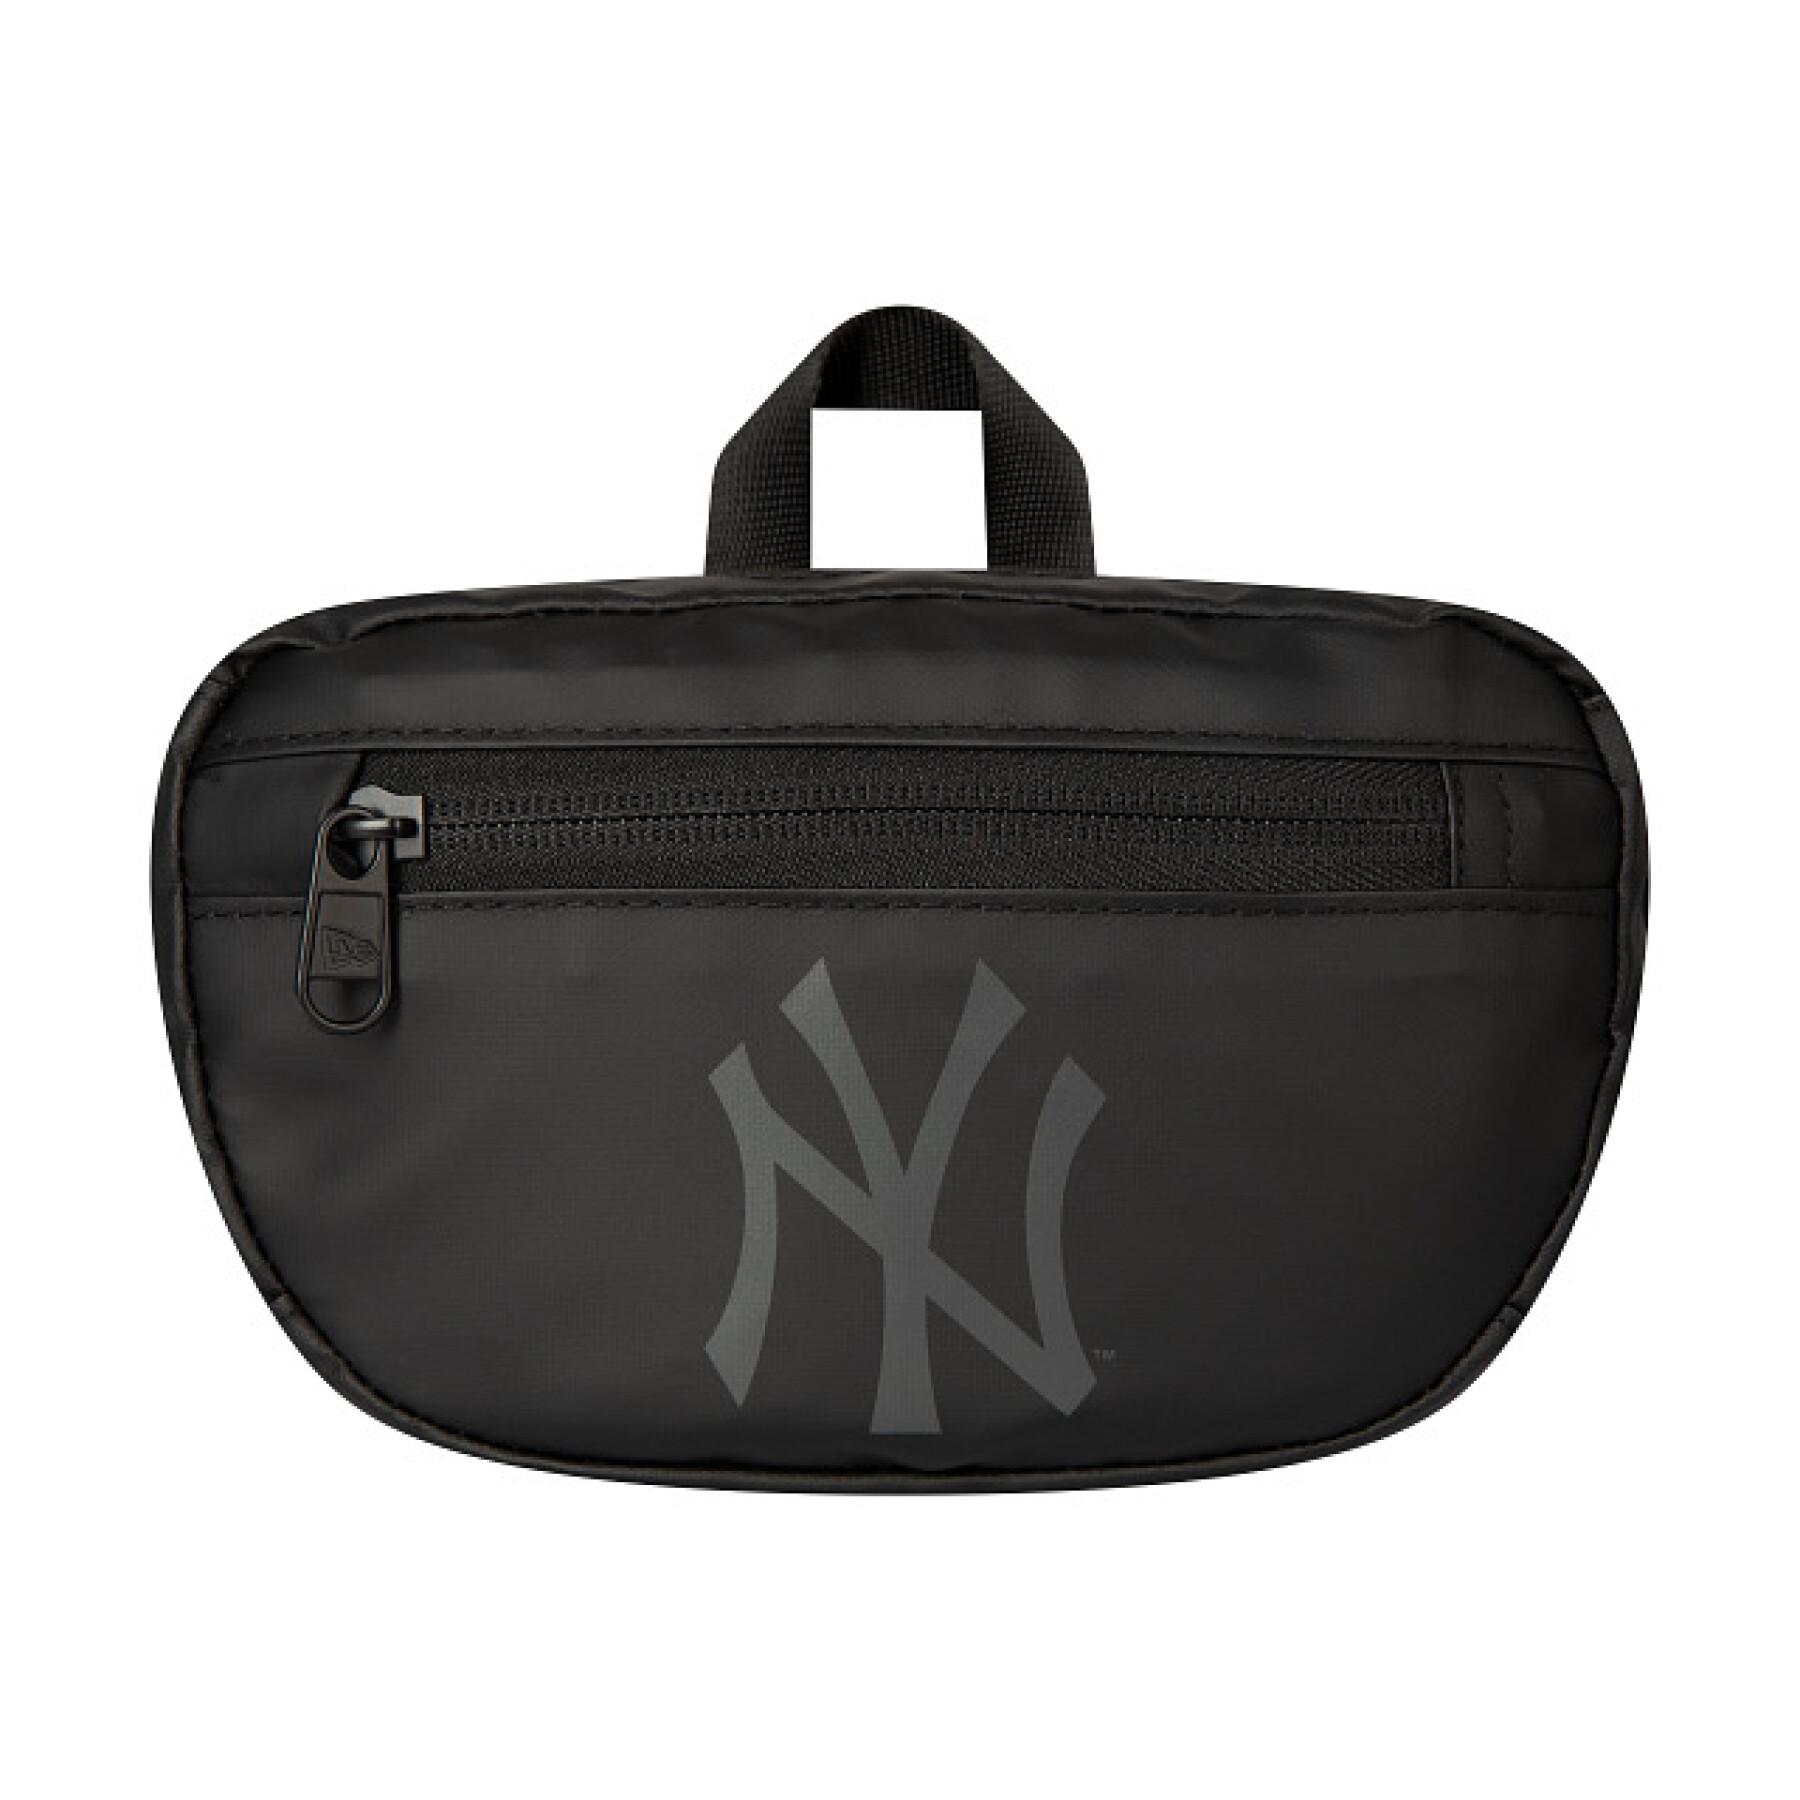 New era MLB Mini Pouch New York Yankees Backpack Black